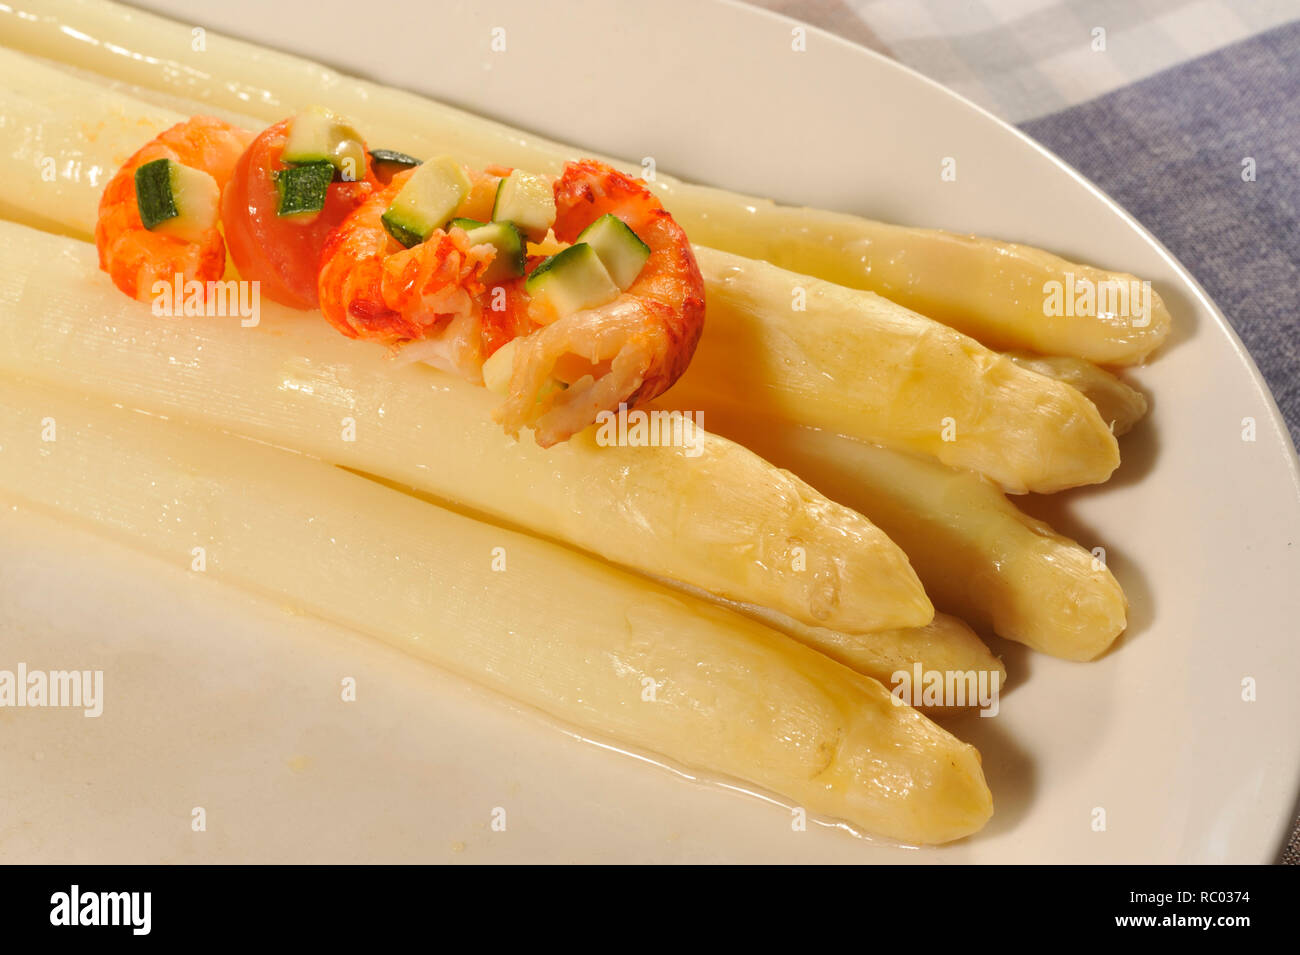 weißer Stangenspargel mit Flusskrebsen | white Asparagus with river crayfish Stock Photo